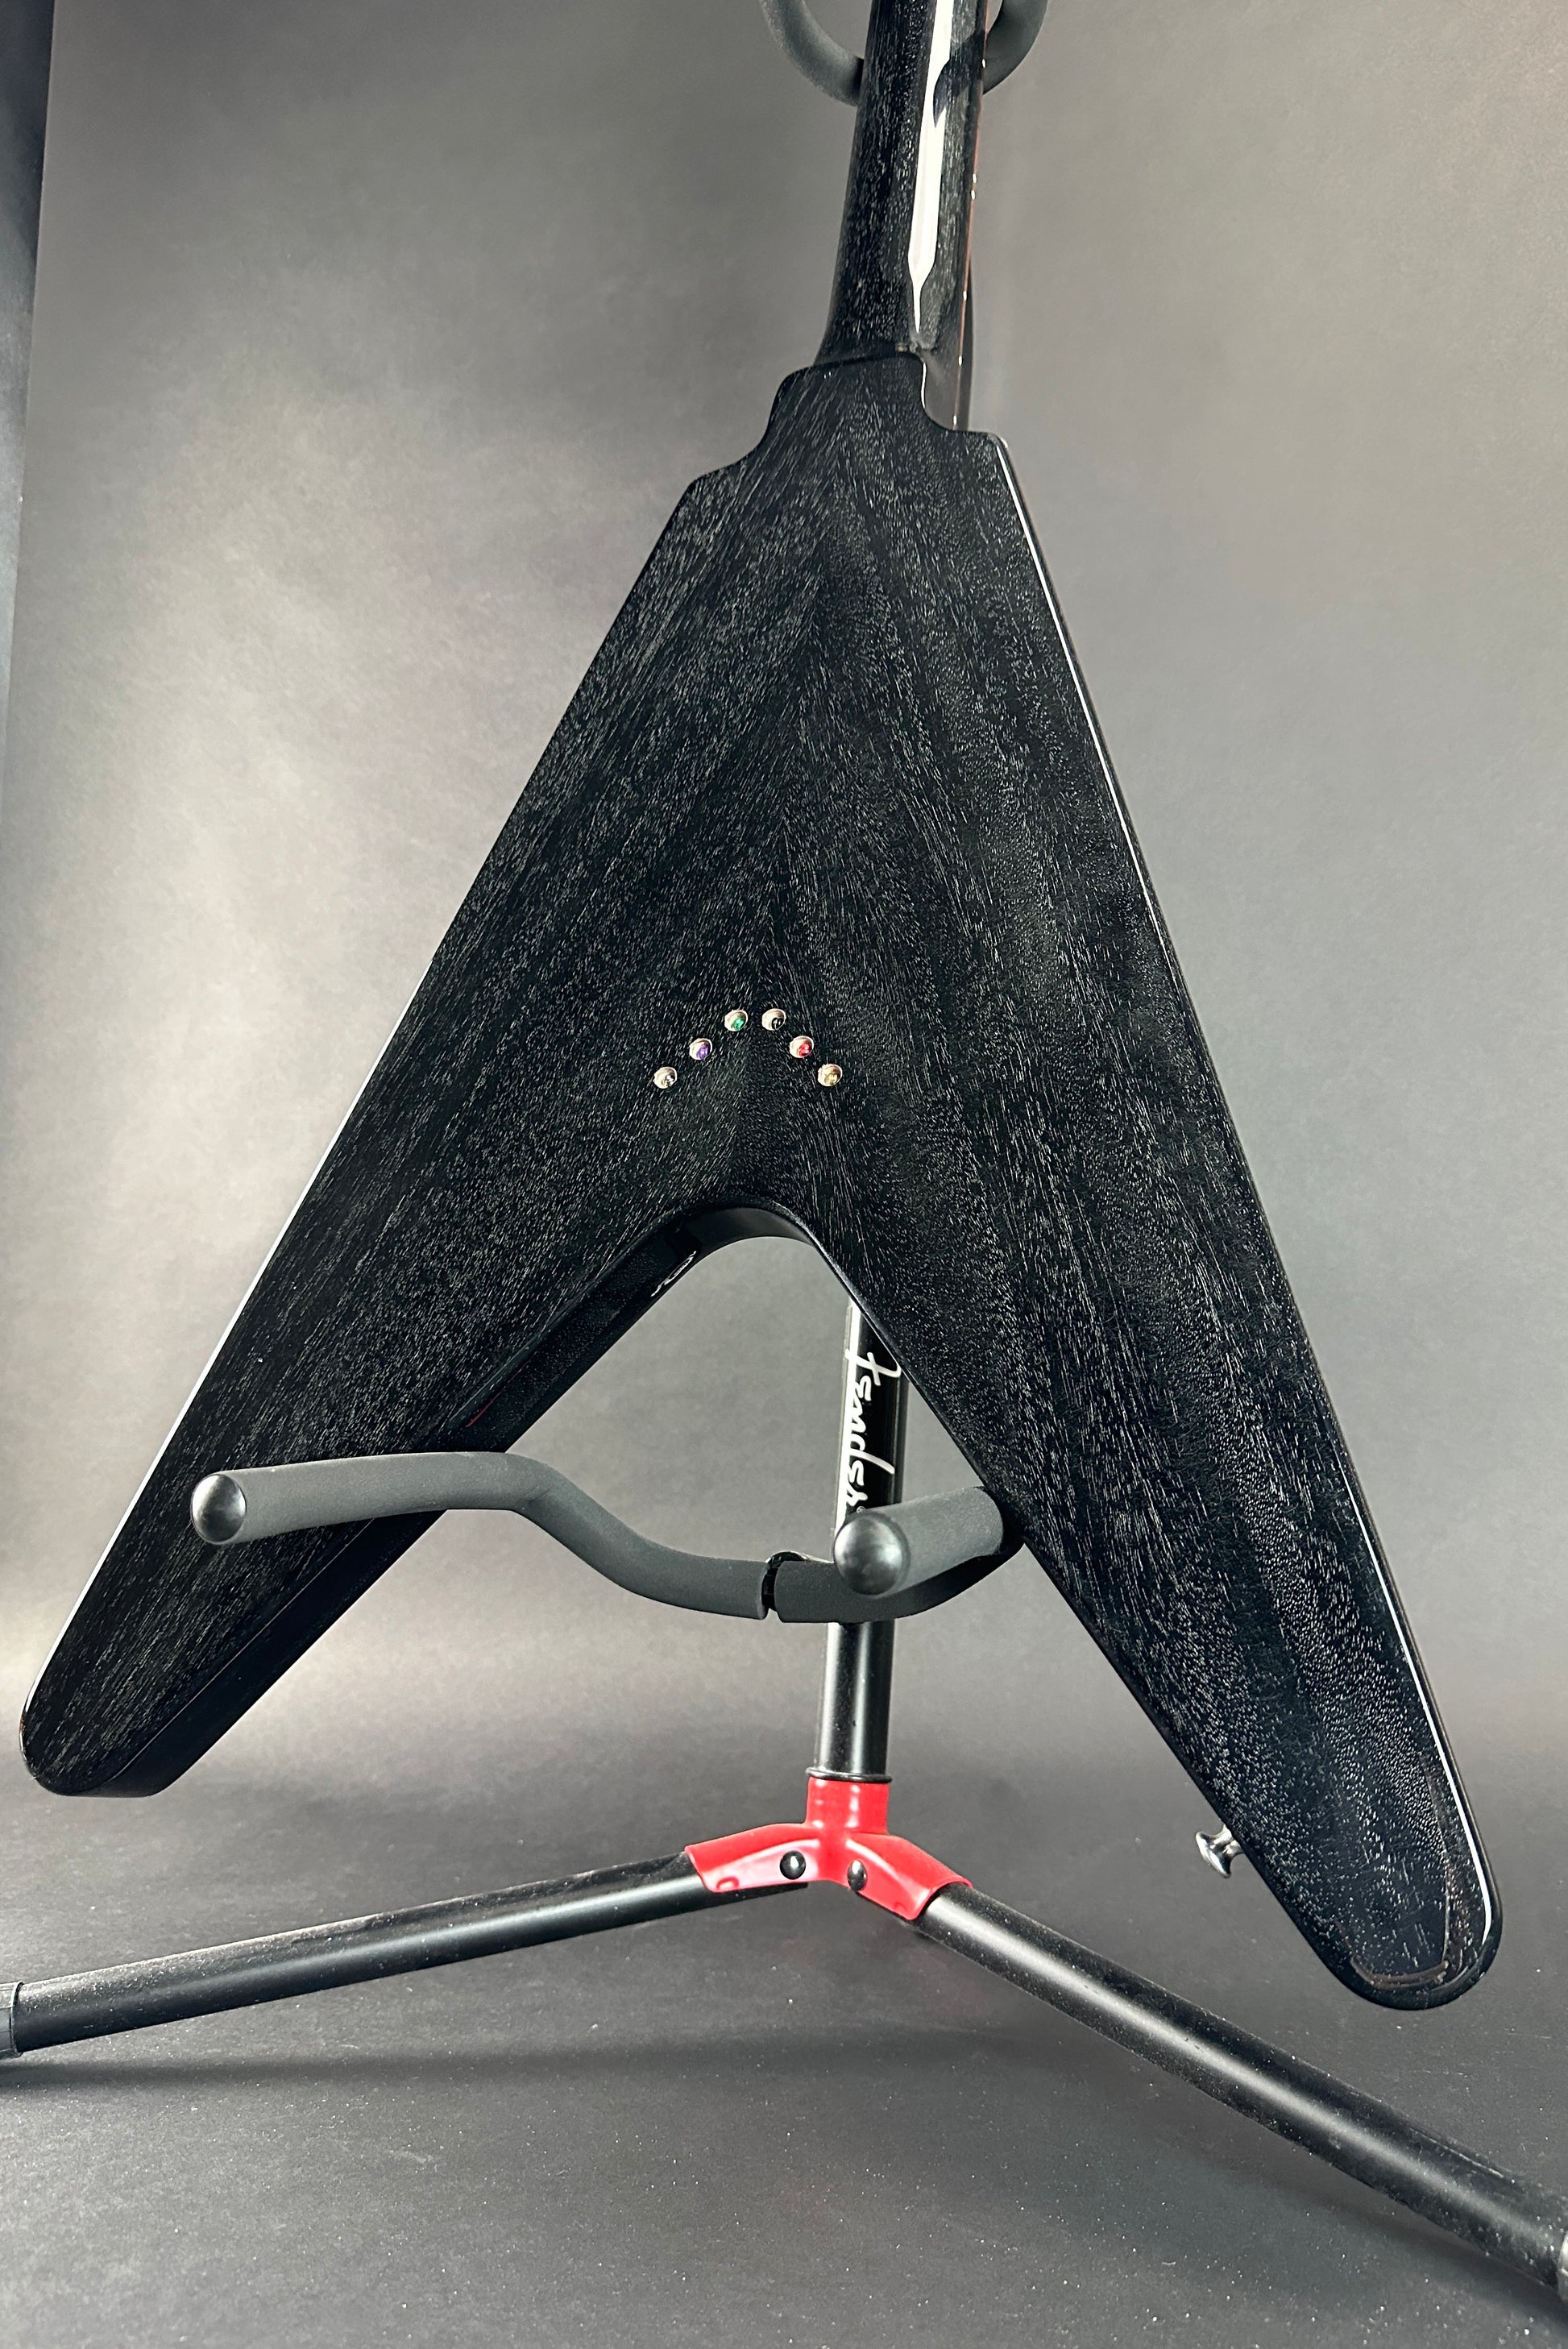 Back angle of Used 2017 Gibson Custom Flying V Black Doghair.